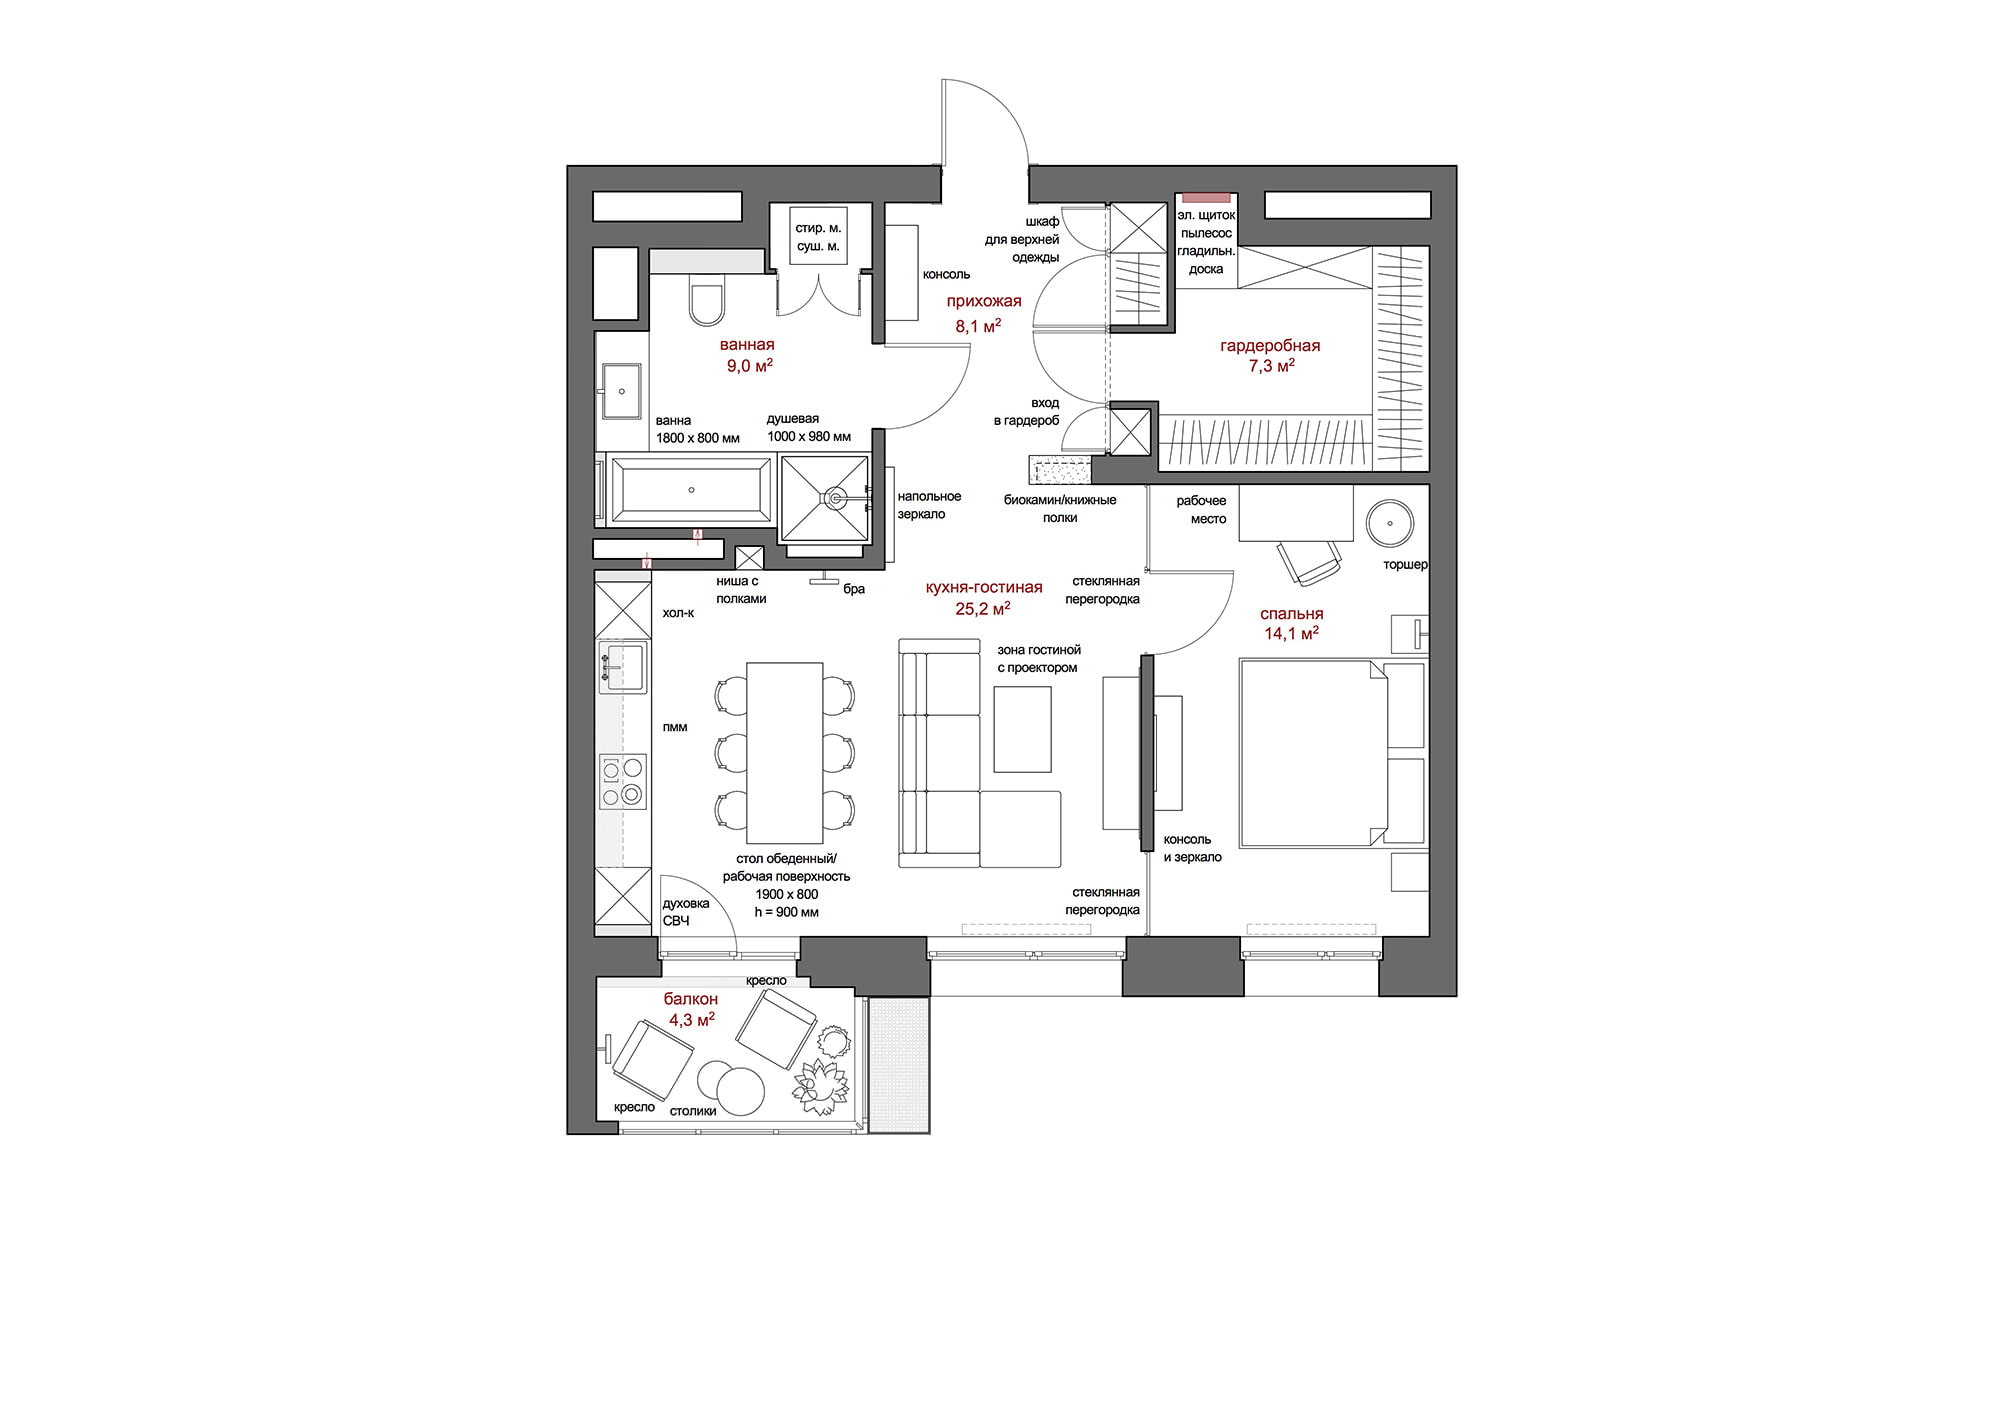 Планировка 2-х комнатной квартиры 63 кв